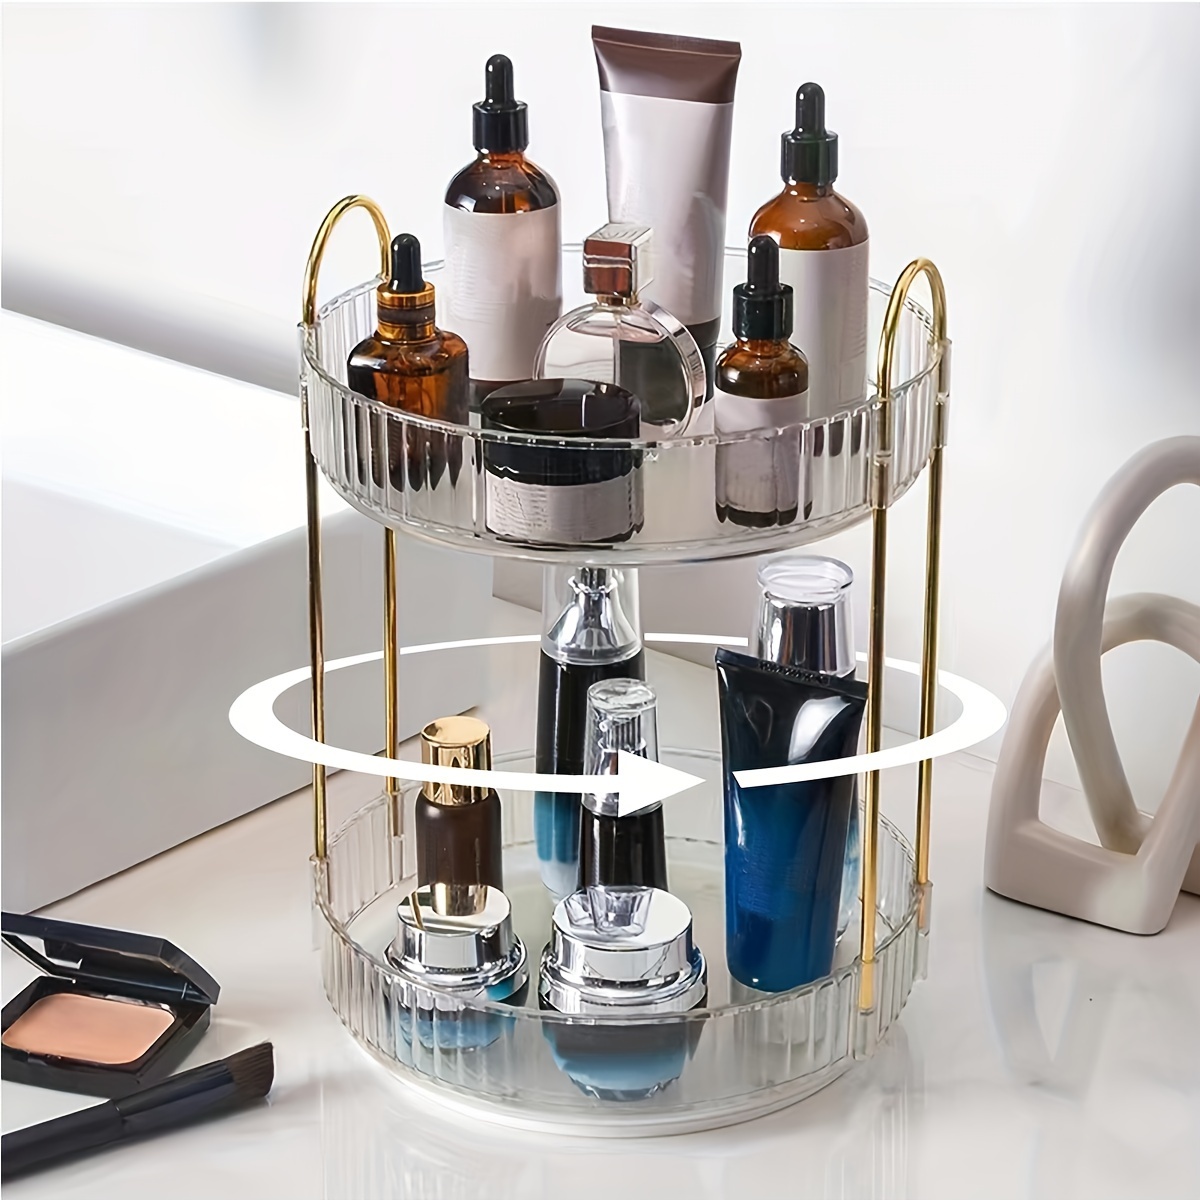 Organizador de maquillaje acrílico con cajones, caja de almacenamiento para  encimera de baño, soporte apilable para cosméticos para joyas, accesorios